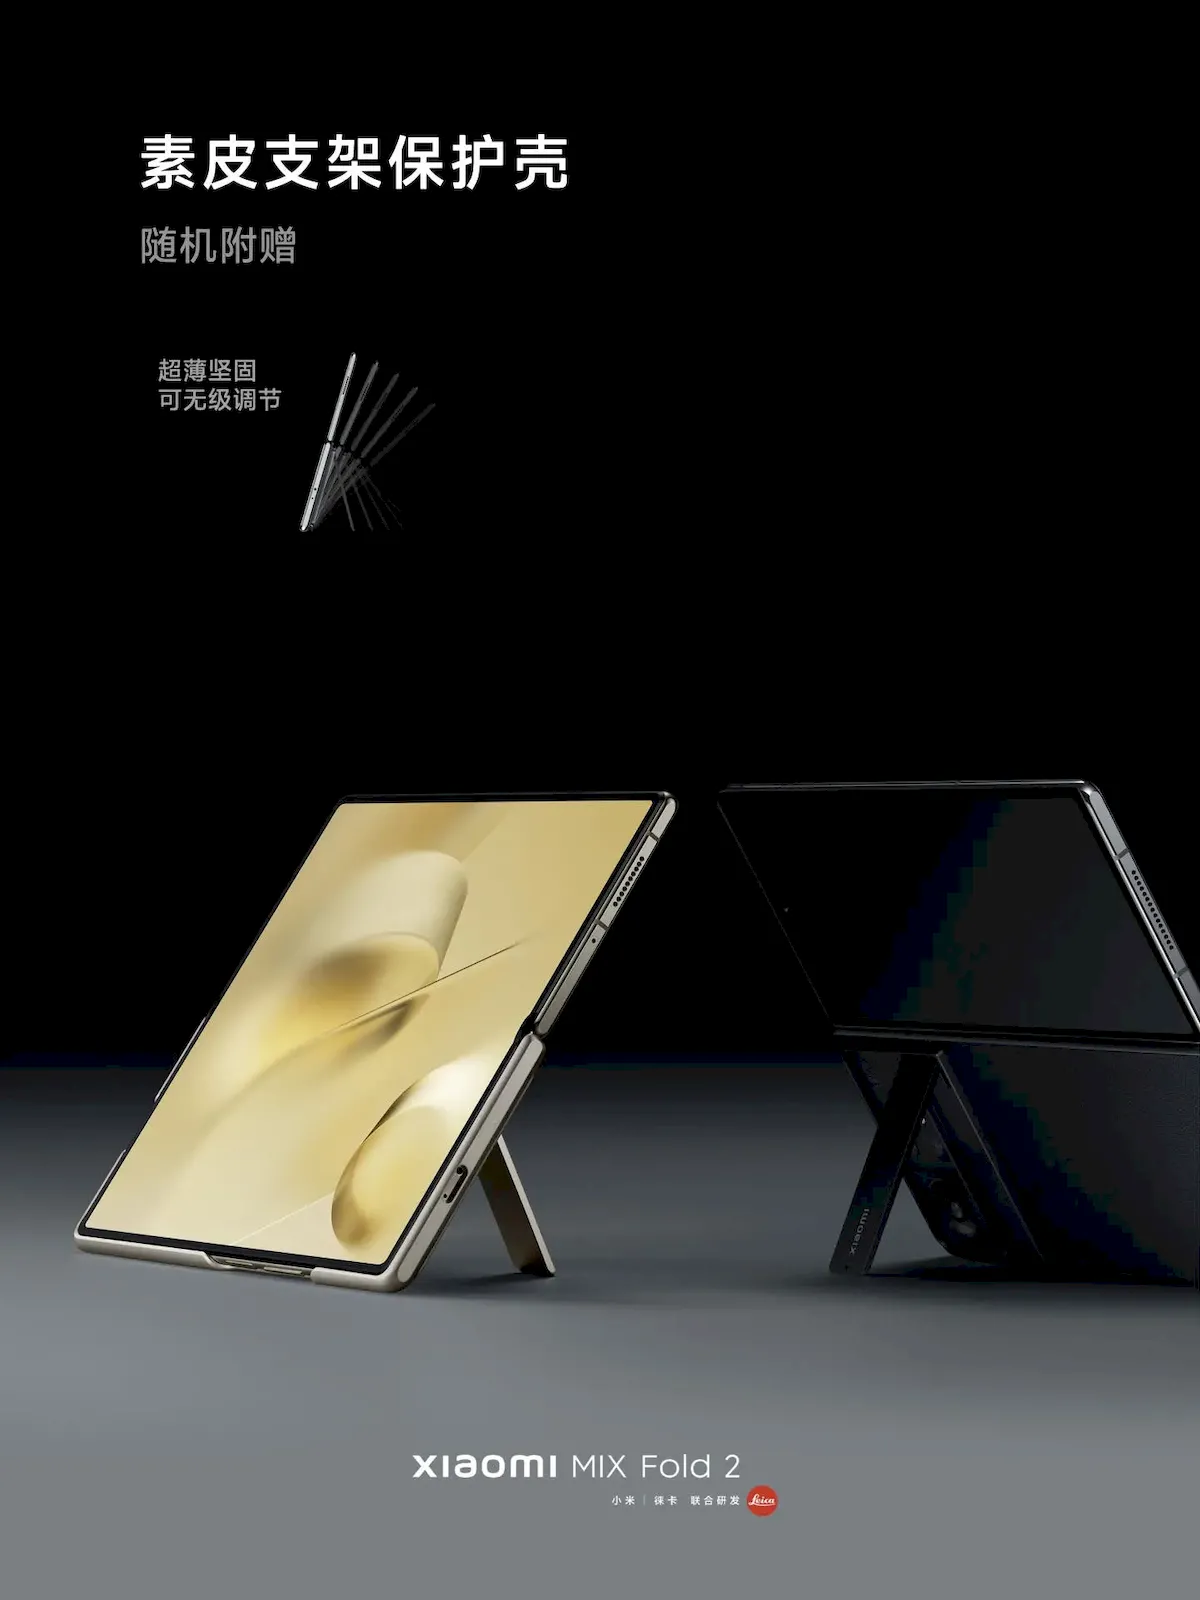 Xiaomi MIX Fold 2 lançado com aparência redesenhada